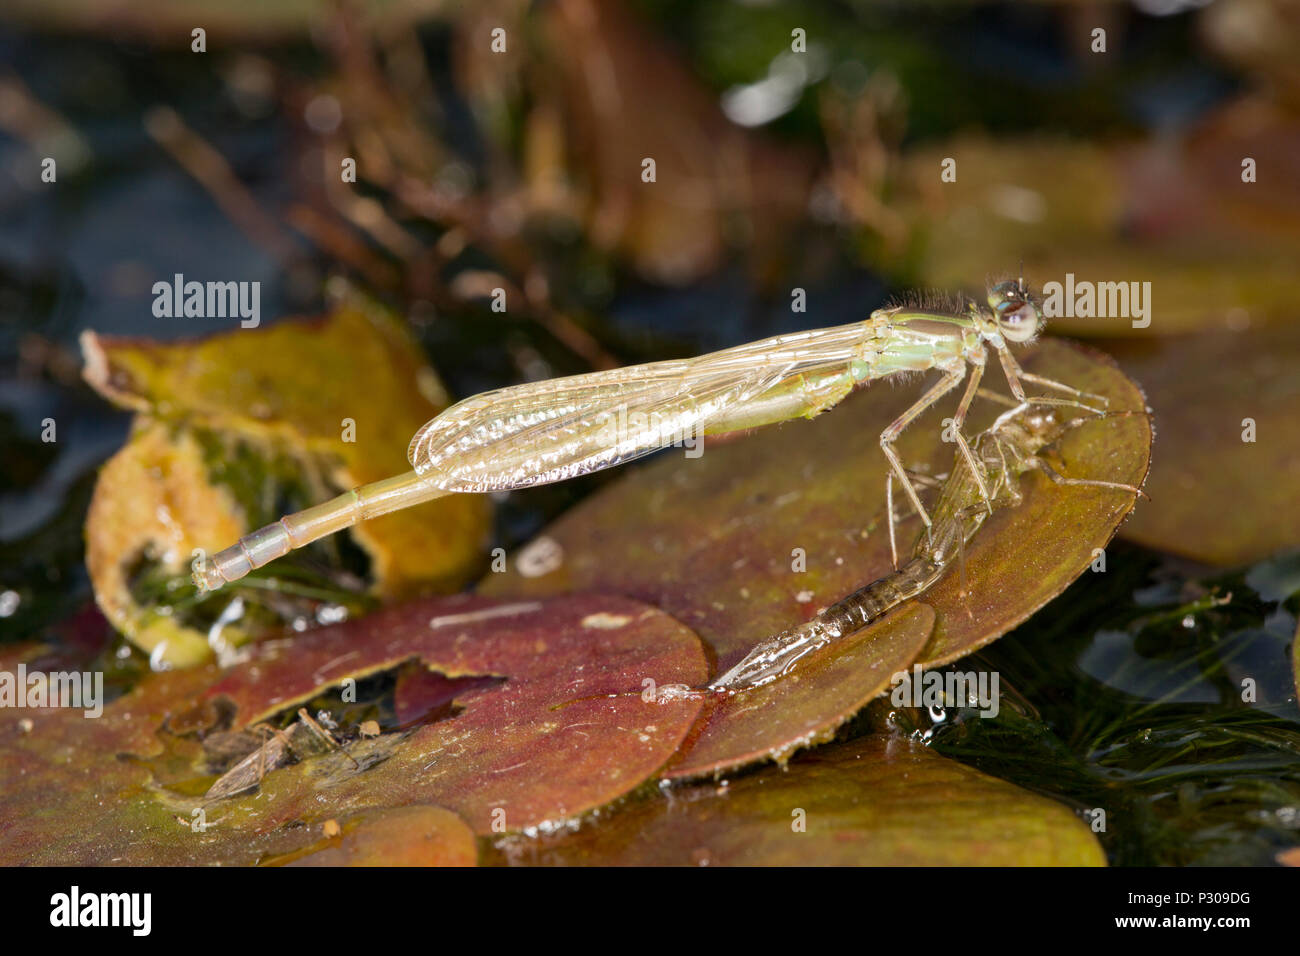 Un recién surgido damselfly que ha perdido su piel, o exuvia larval, y descansa sobre una pequeña lilypad en un estanque de jardín. Lancashire, el Noroeste de Inglaterra Foto de stock